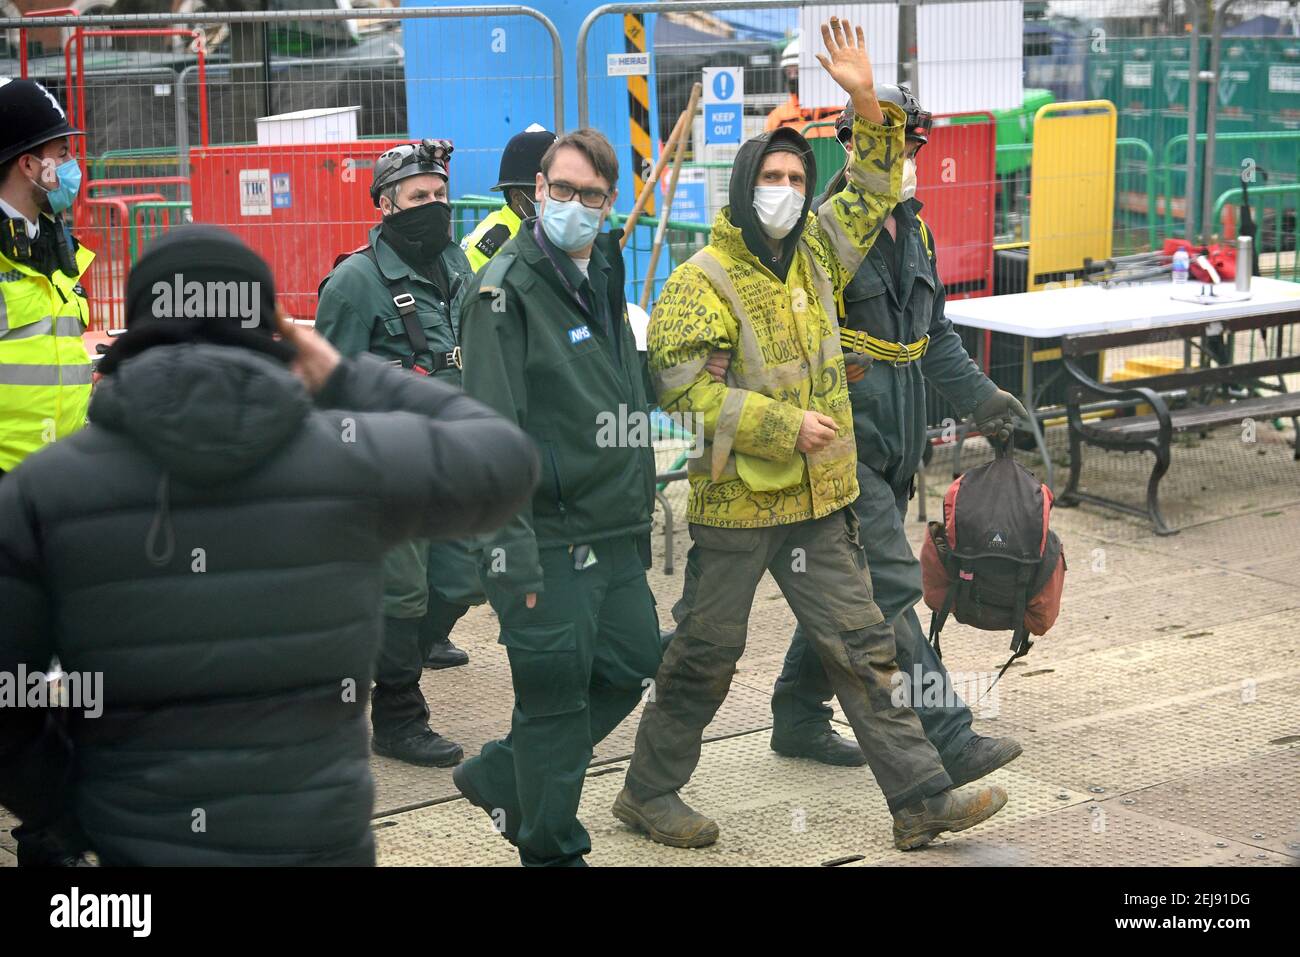 Un activista anti-HS2, conocido como 'Larch', camina con paramédicos cuando sale de Euston Square Gardens, Londres, después de que fue retirado por los bailaíffs de un túnel de 100 pies donde había estado protestando. Fecha del cuadro: Lunes 22 de febrero de 2021. Foto de stock